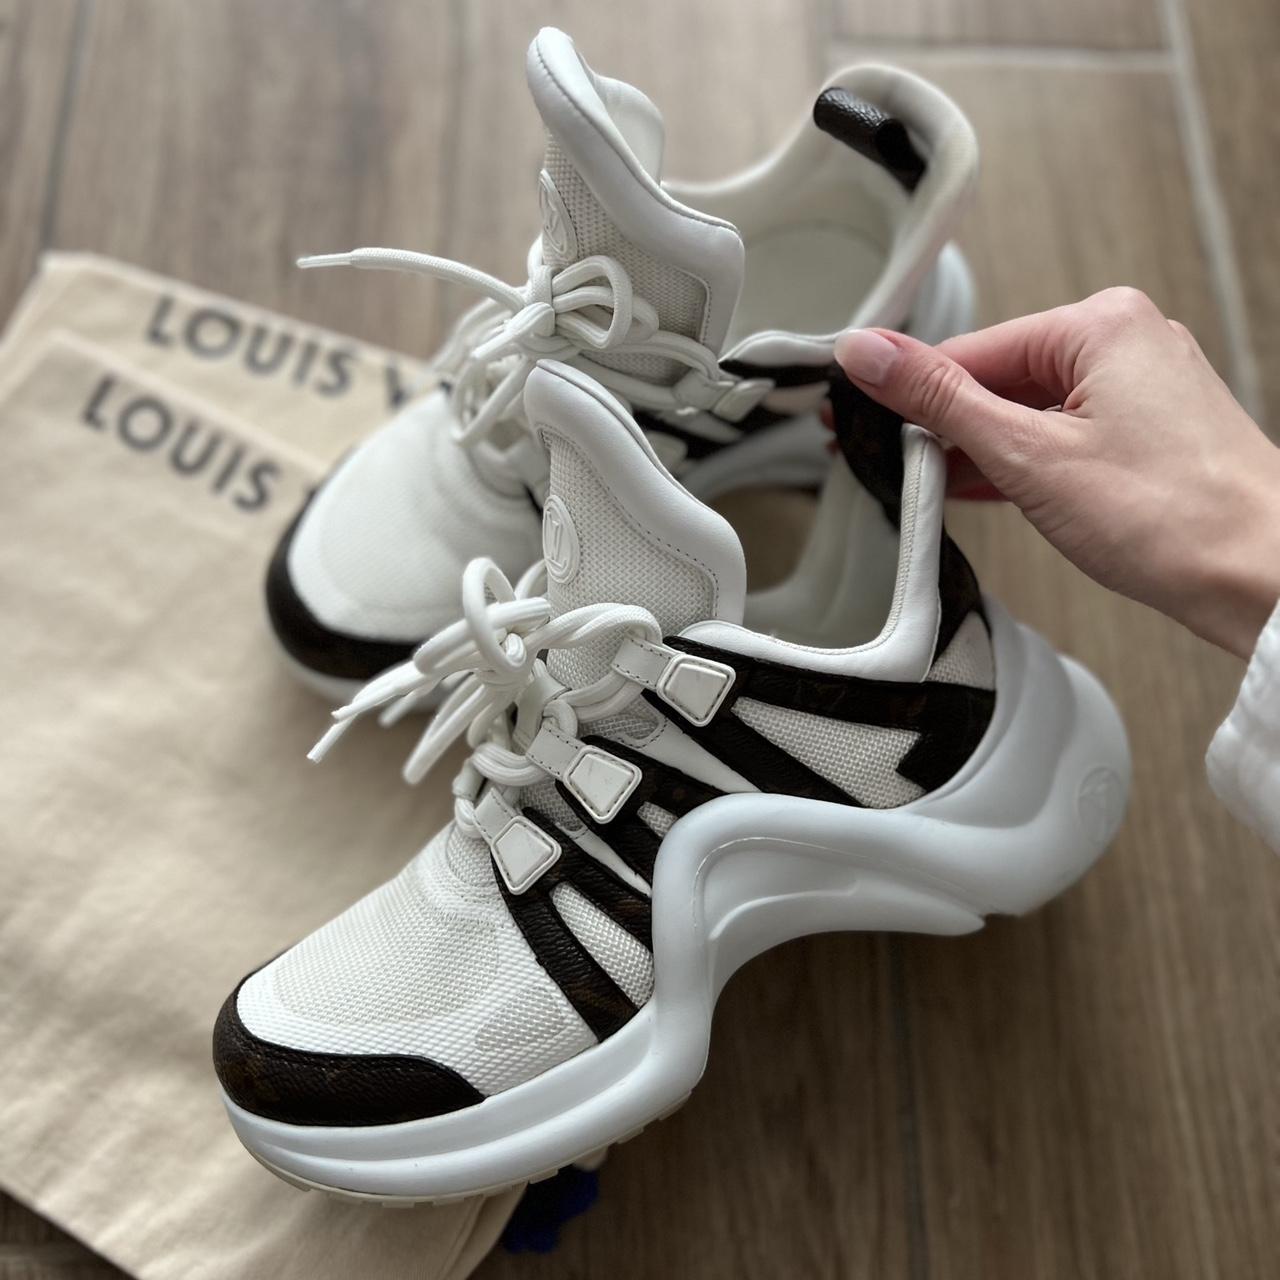 Louis Vuitton LV Archlight sneakers Authentic LV - Depop